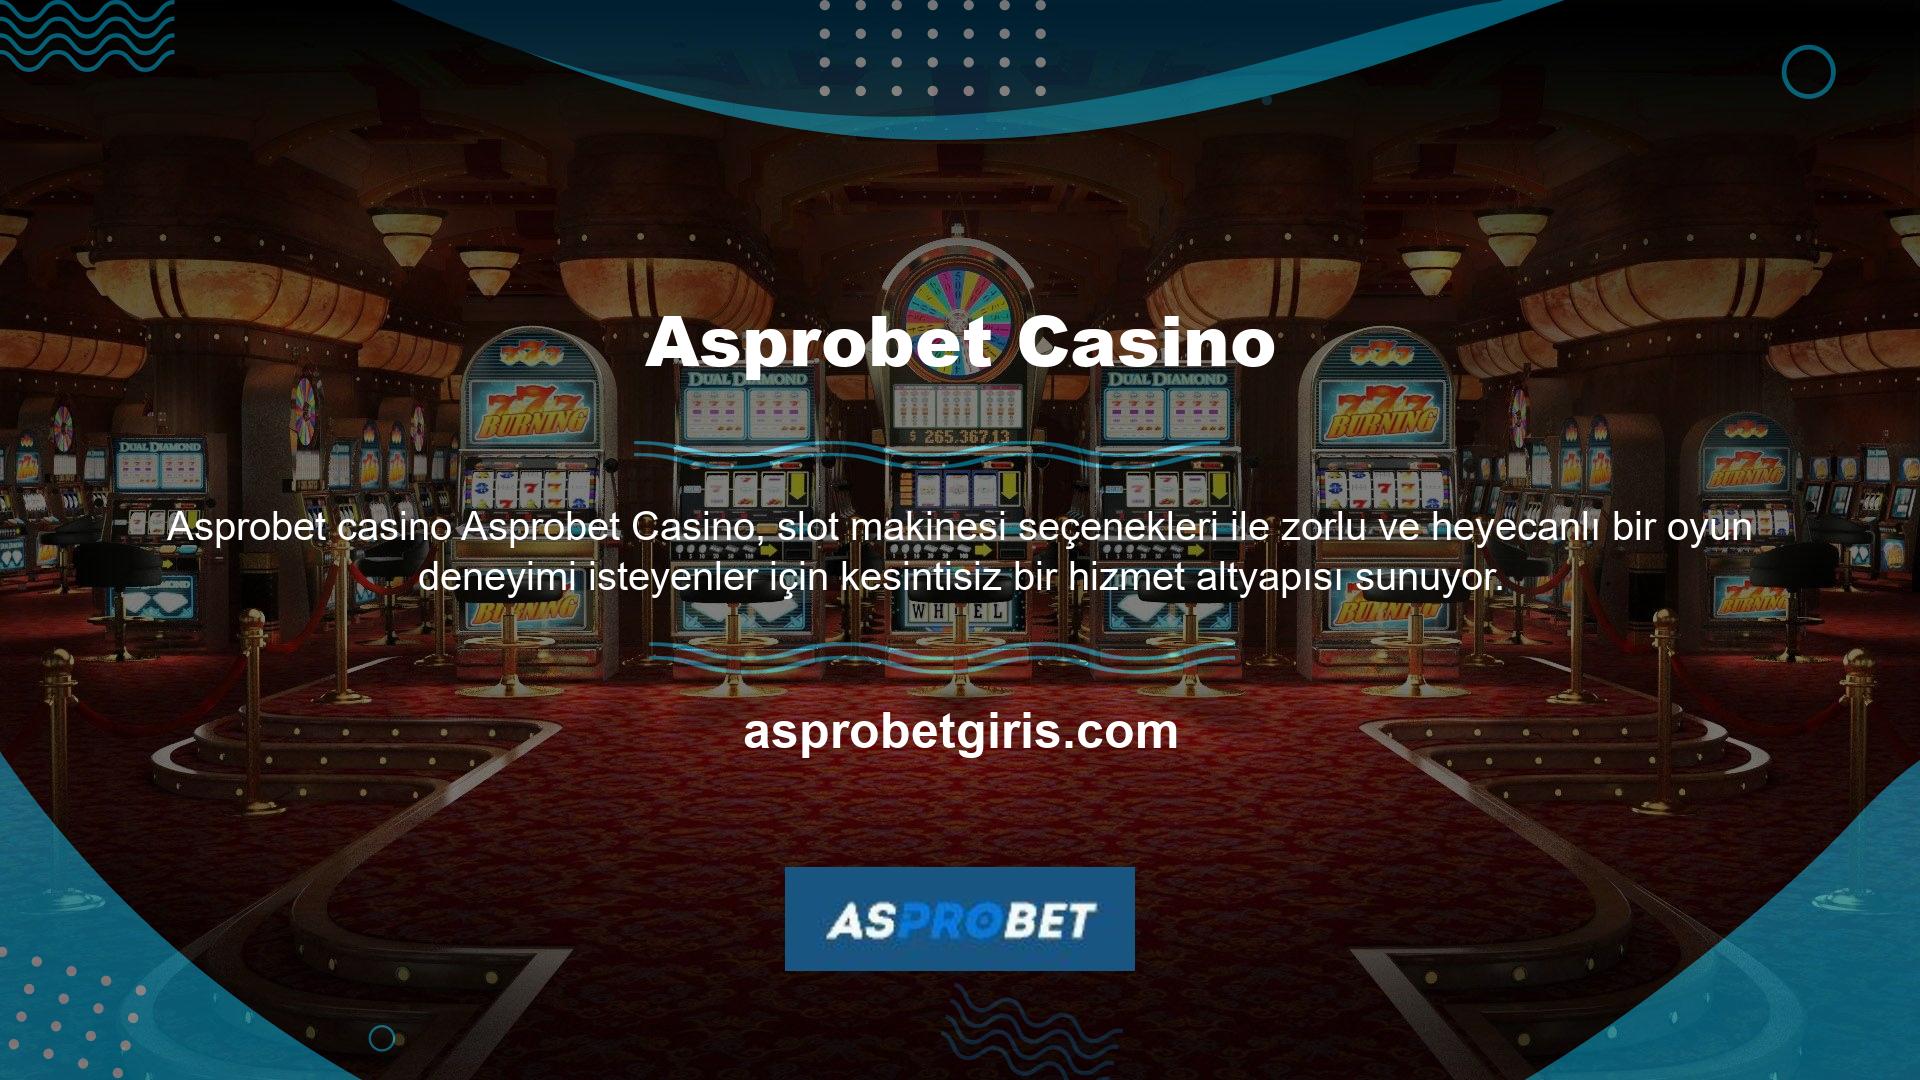 Bu sayede casino kategorisindeki en heyecan verici fırsatlardan güvenle yararlanabilirsiniz